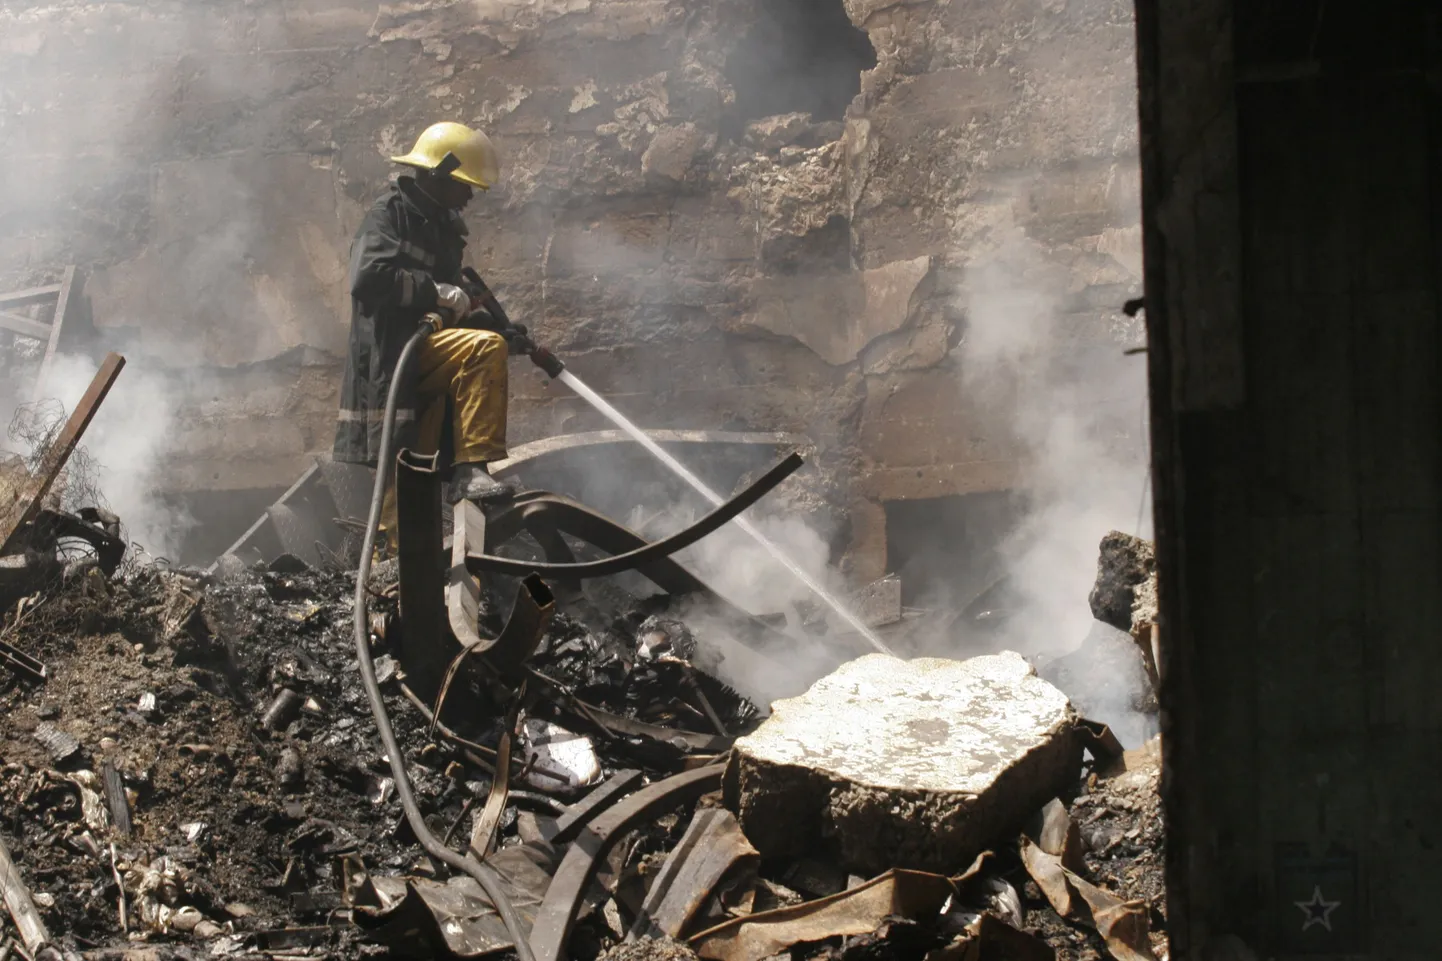 Nairobi tuletõrjujad maha põlenud Nakumatti kaubahalli suitsevatel rusudel.